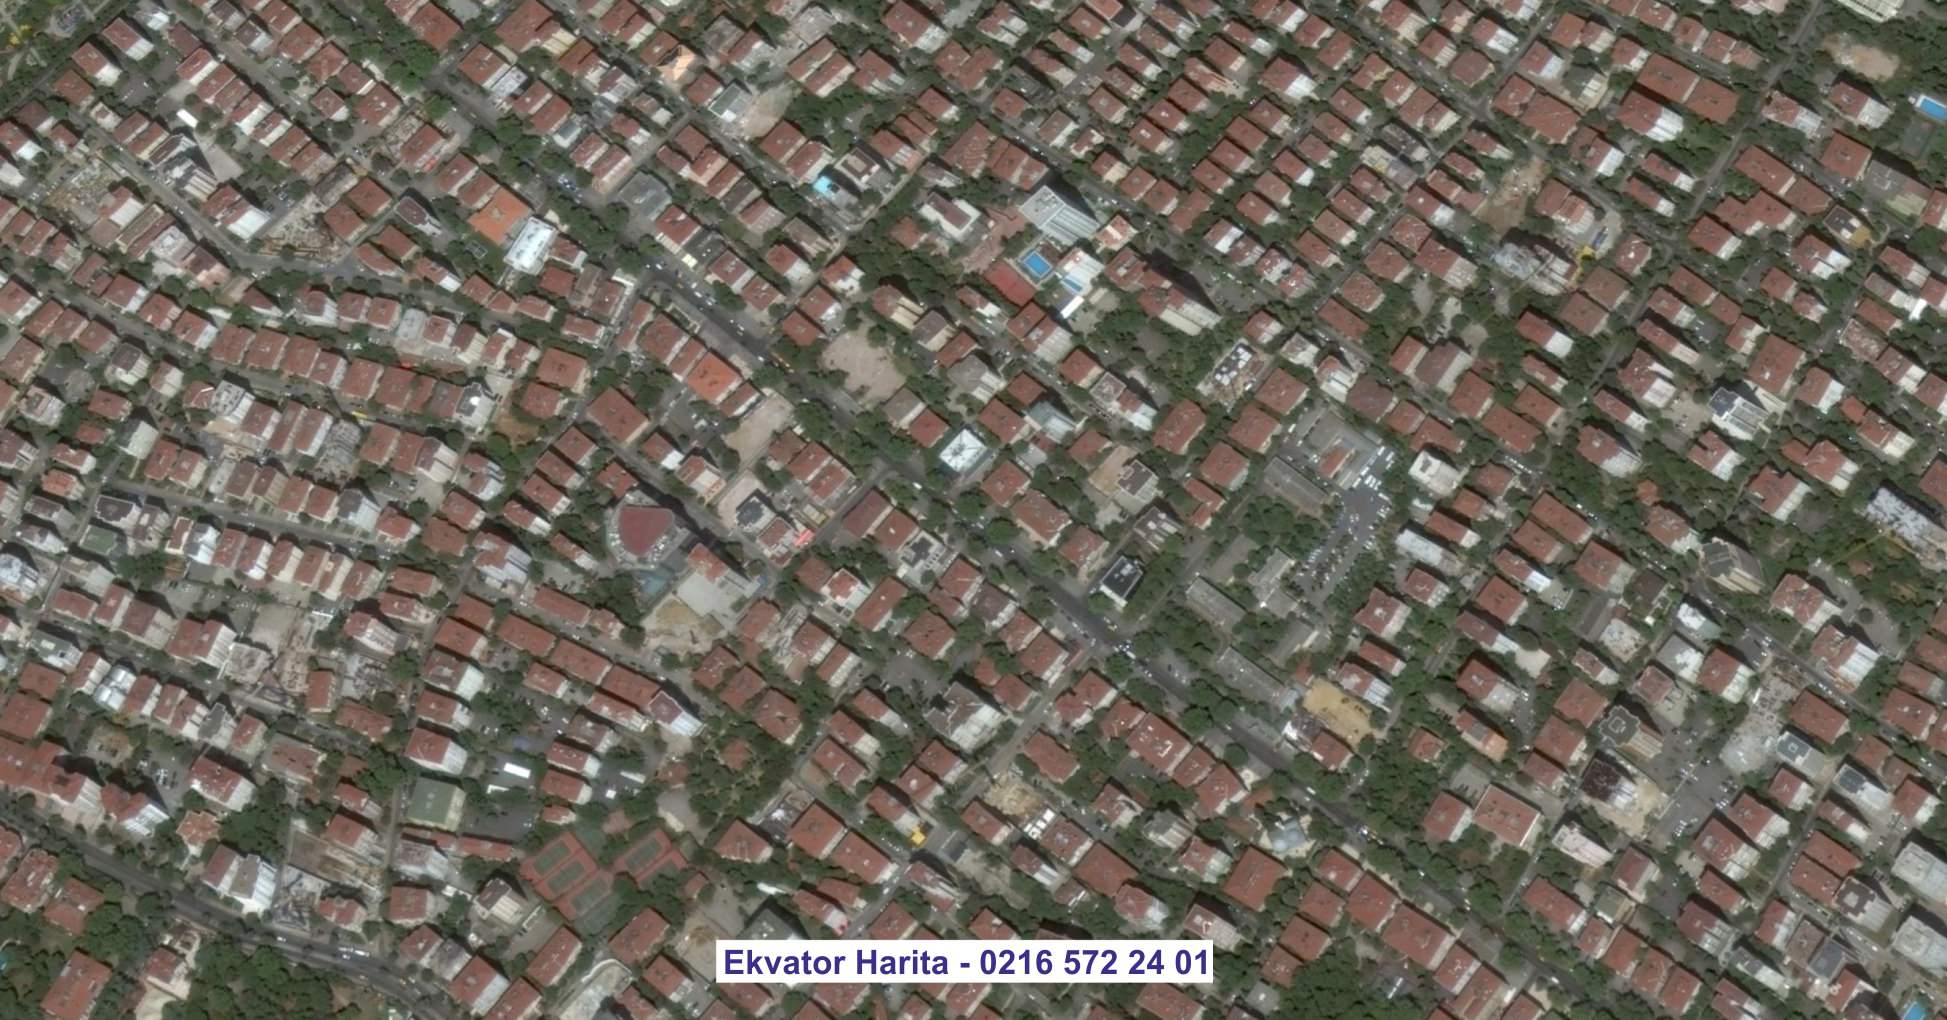 Balçova Uydu Görüntüsü Örnek Fotoğrafı